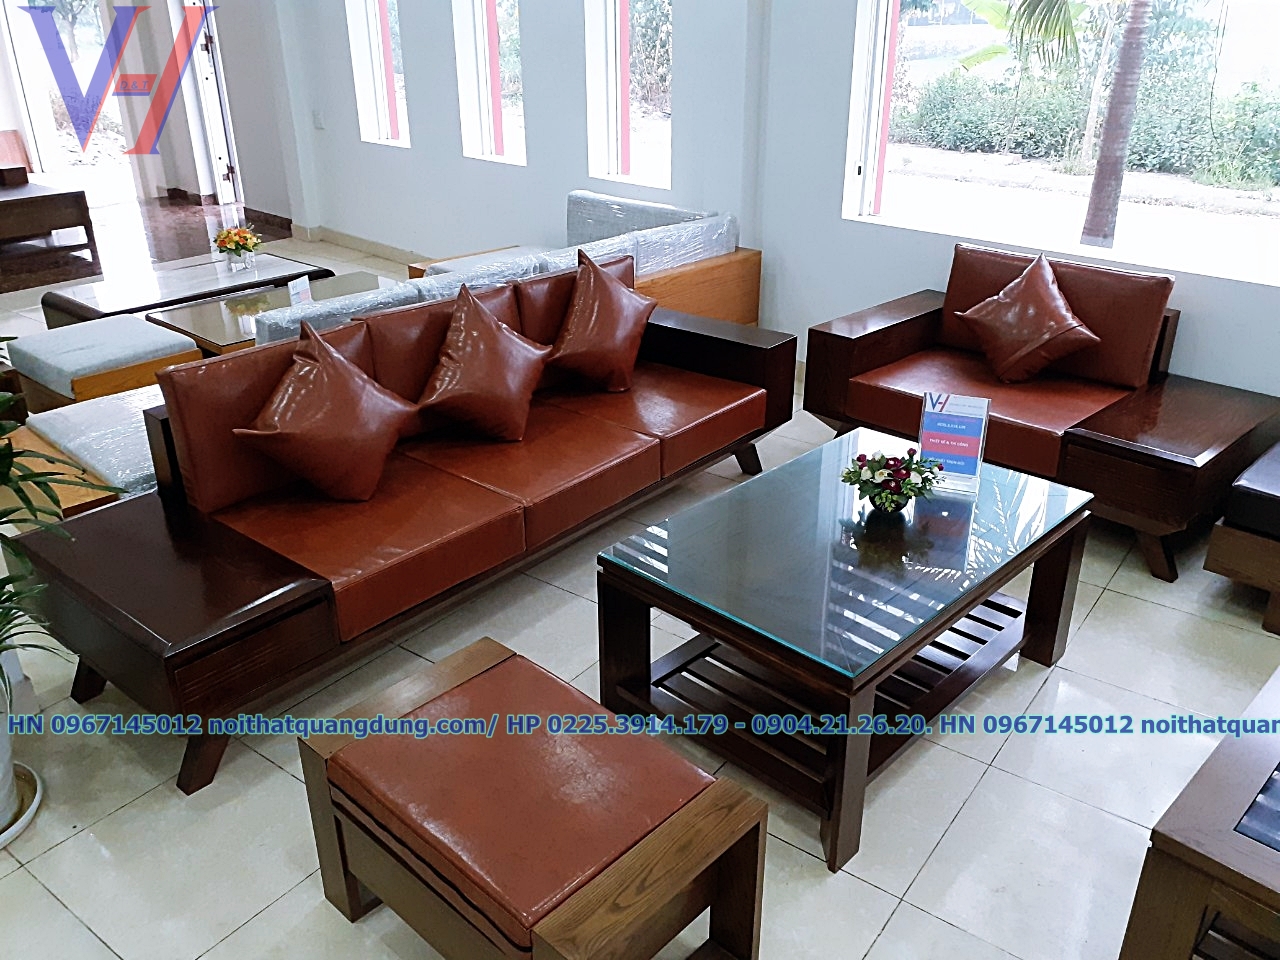 Sofa 2 văng gỗ da cực chất tại nội thất quang dũng hải phòng